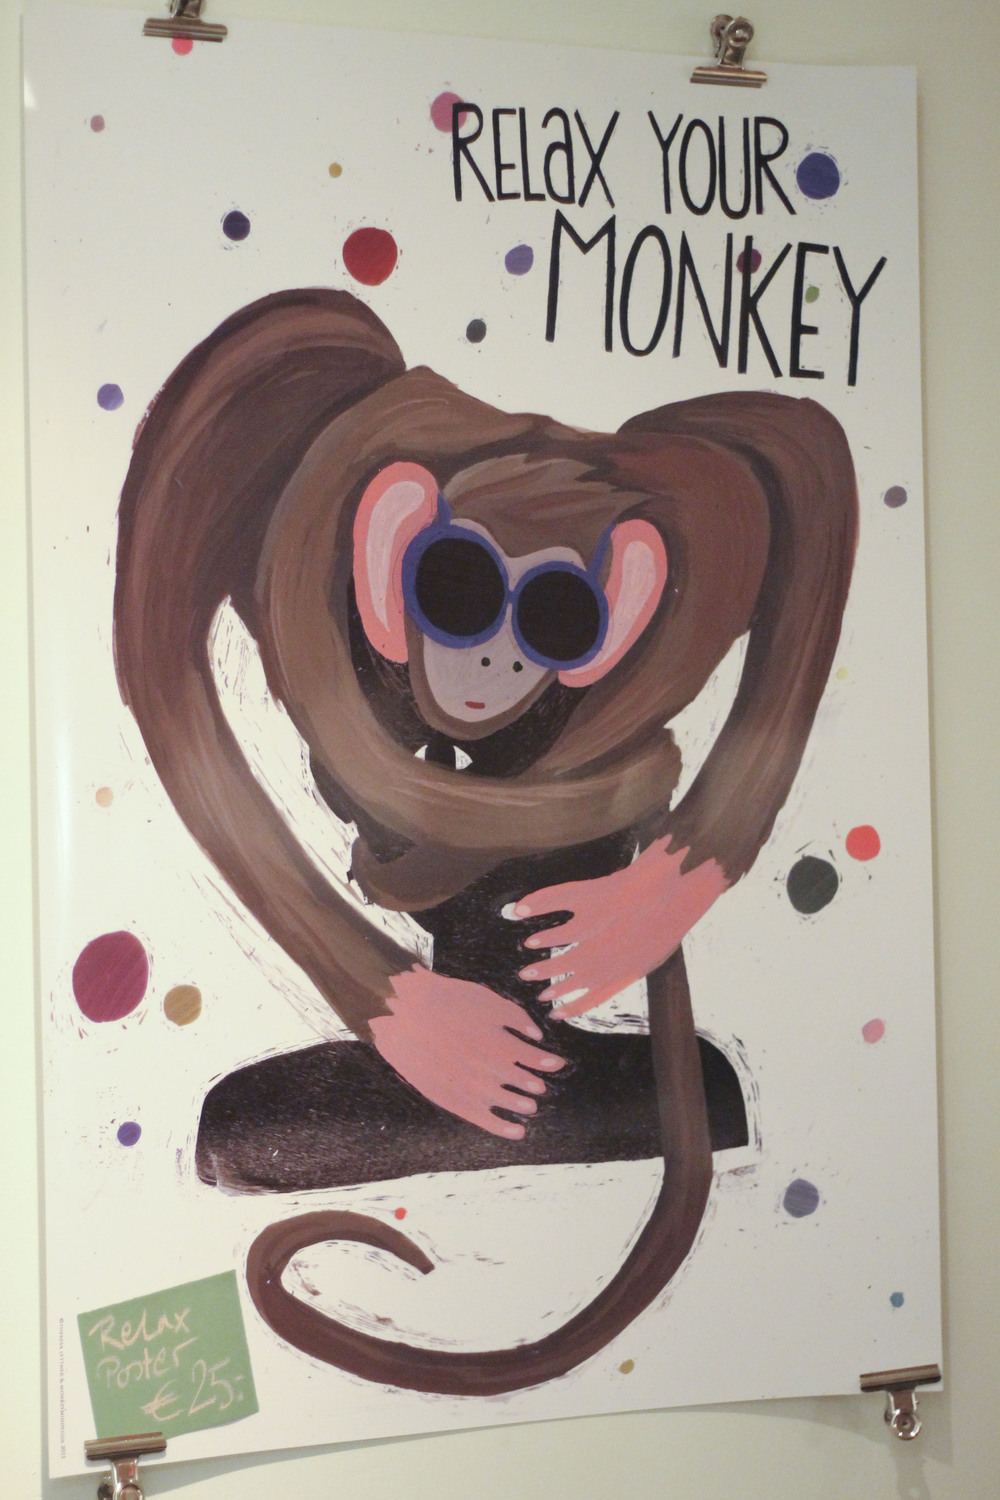 Monkey mind yoga studio hamburg571.jpg